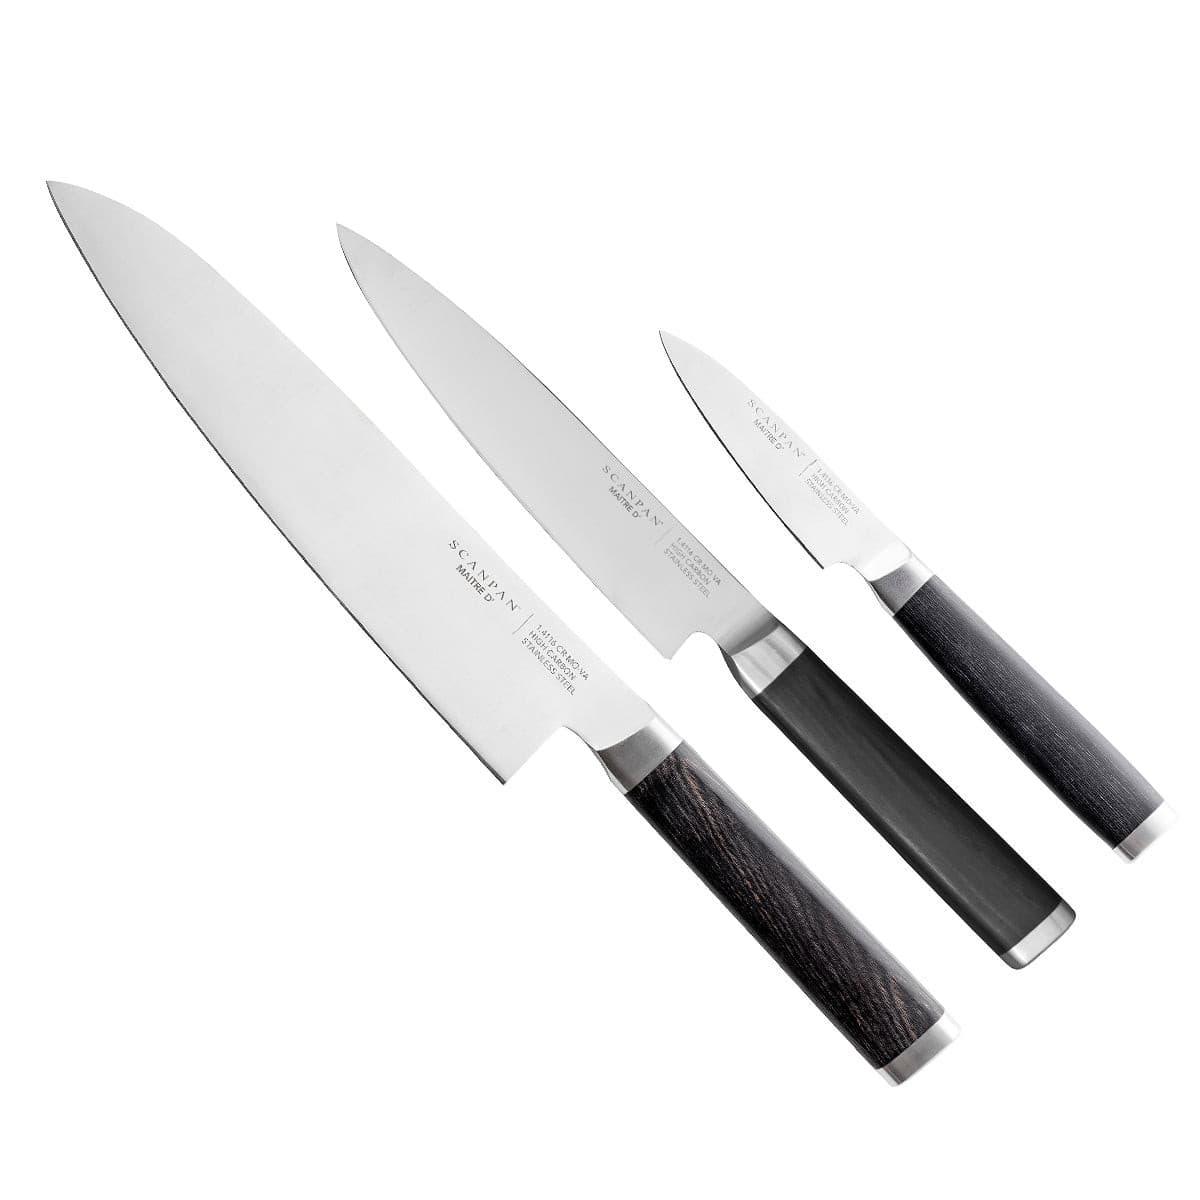 3Pcs Hand-Forged Slaughter Boning knife Set Butcher Knife for Meat